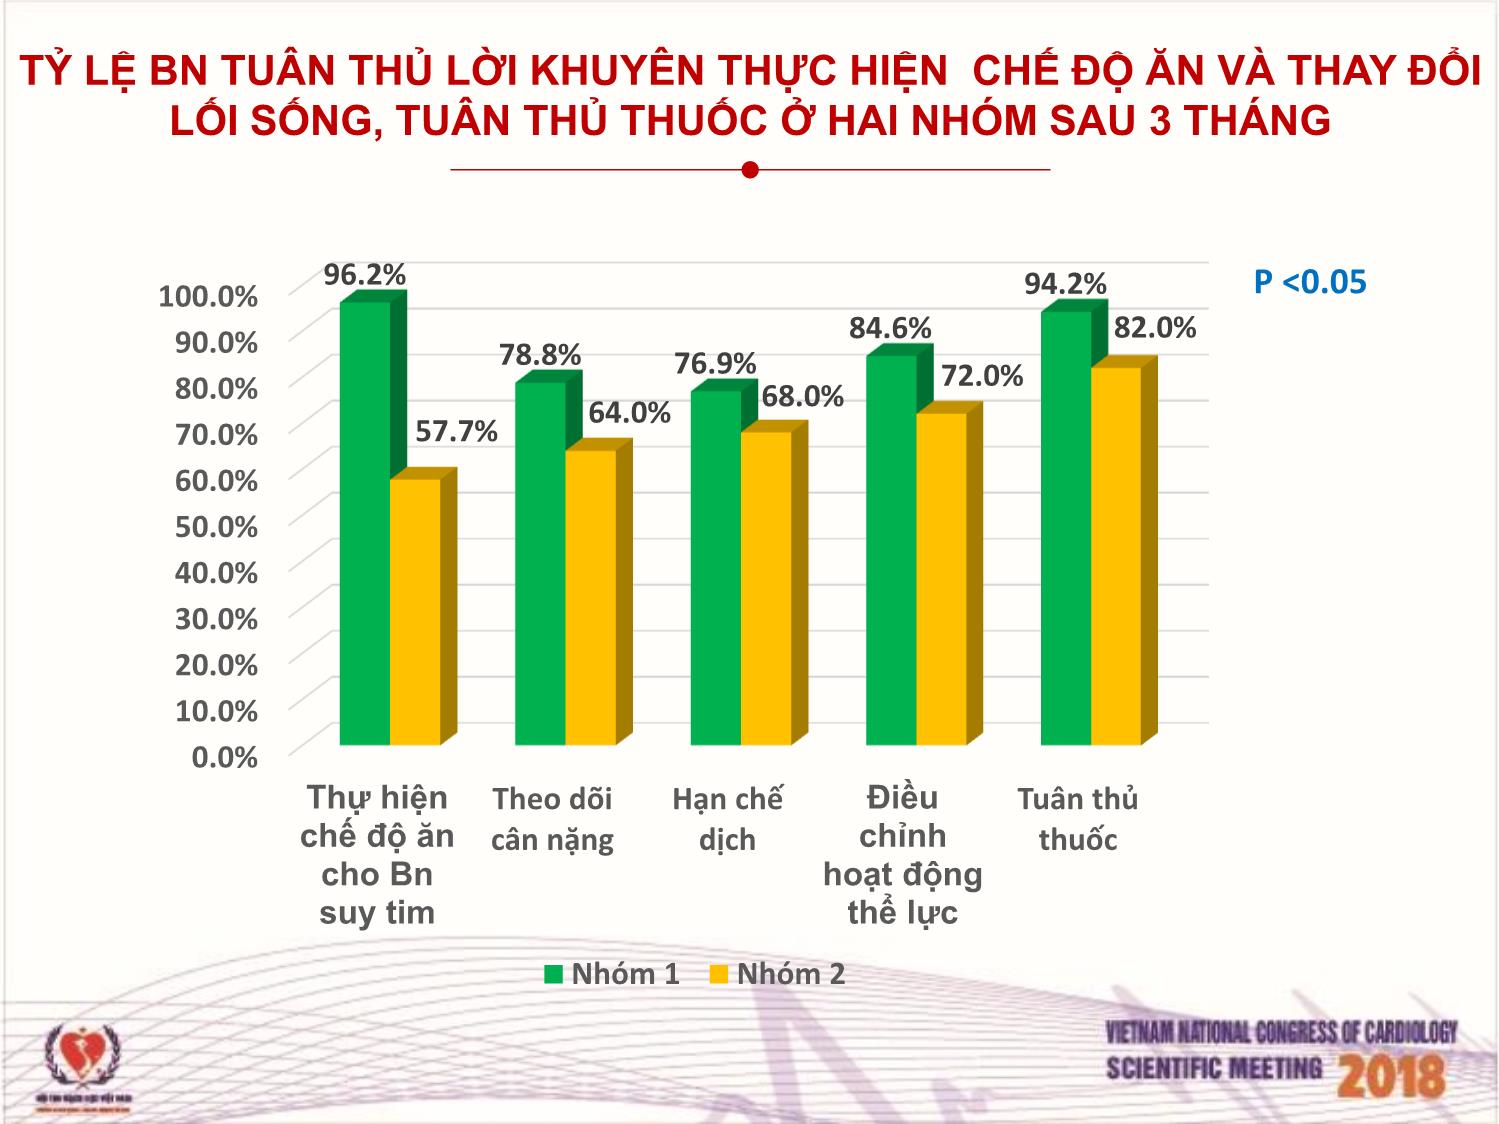 Hiệu quả của việc tư vấn chế độ ăn thực hiện bởi điều dưỡng cho bệnh nhân suy tim điều trị ngoại trú tại viện tim mạch Việt Nam trang 9